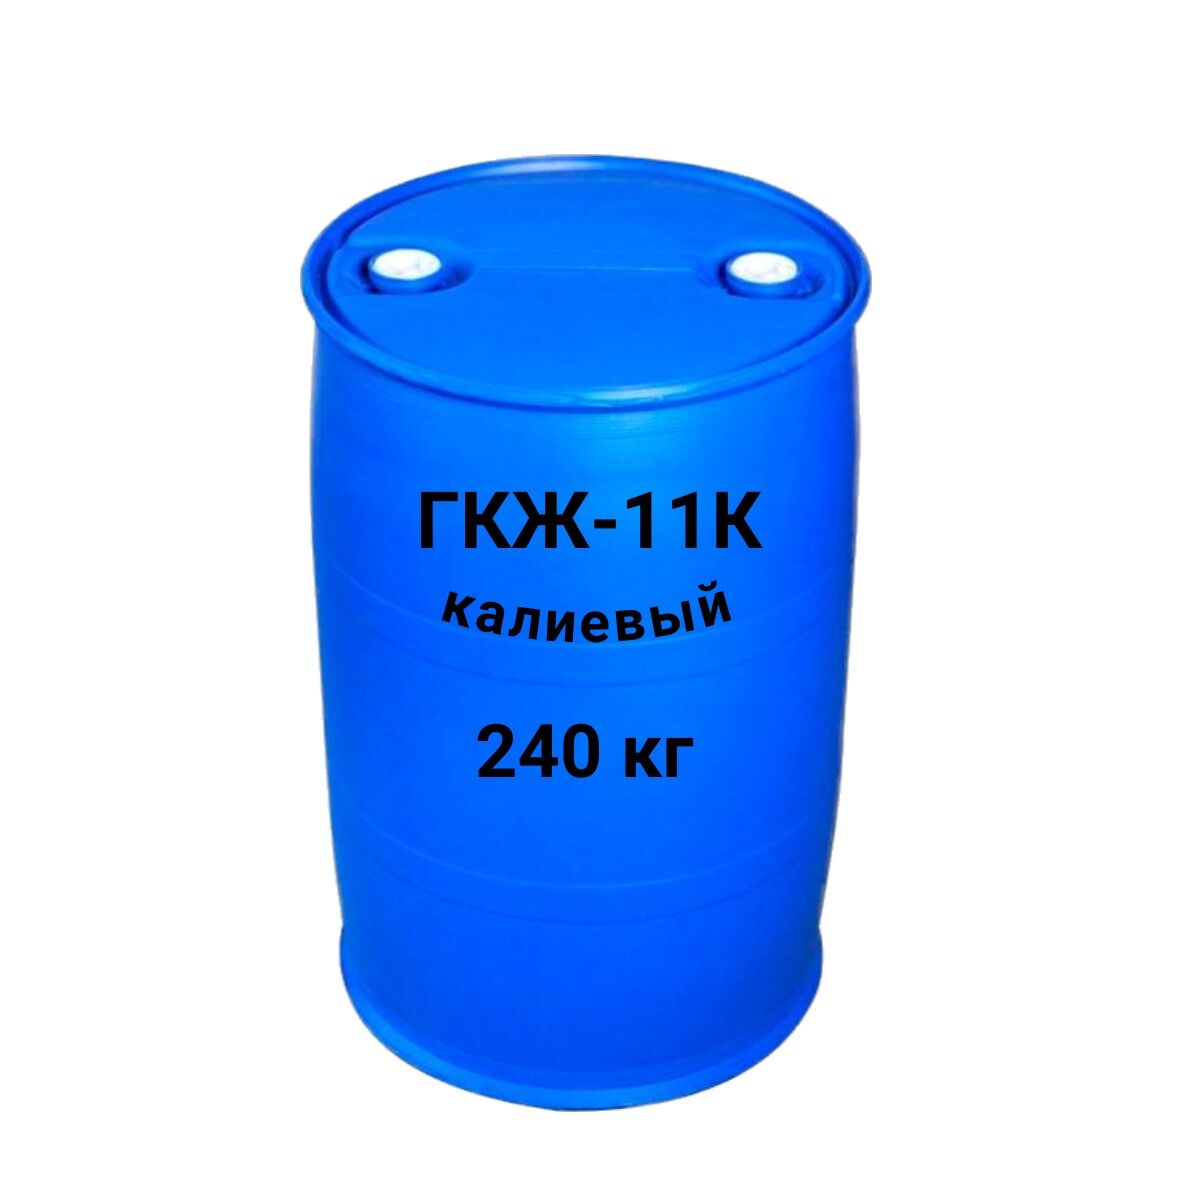 Гидрофобизатор ГКЖ-11К концентрат водорастворимый ТУ 2229-023-44216037-22 с изм 1 4